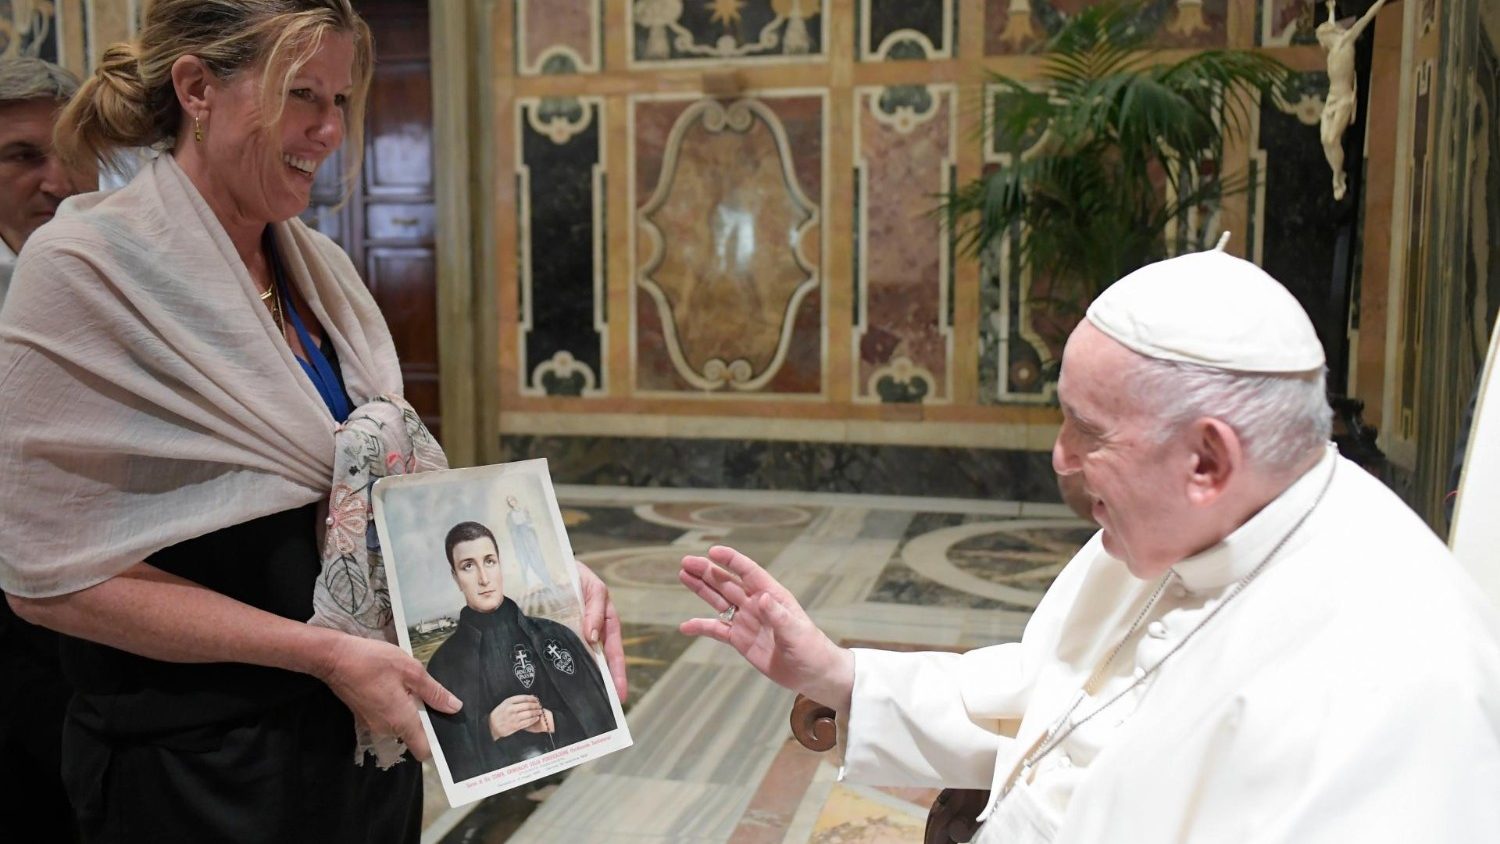 Il Papa: valorizzare "i santi della porta accanto", attenti alle mistificazioni sui social 